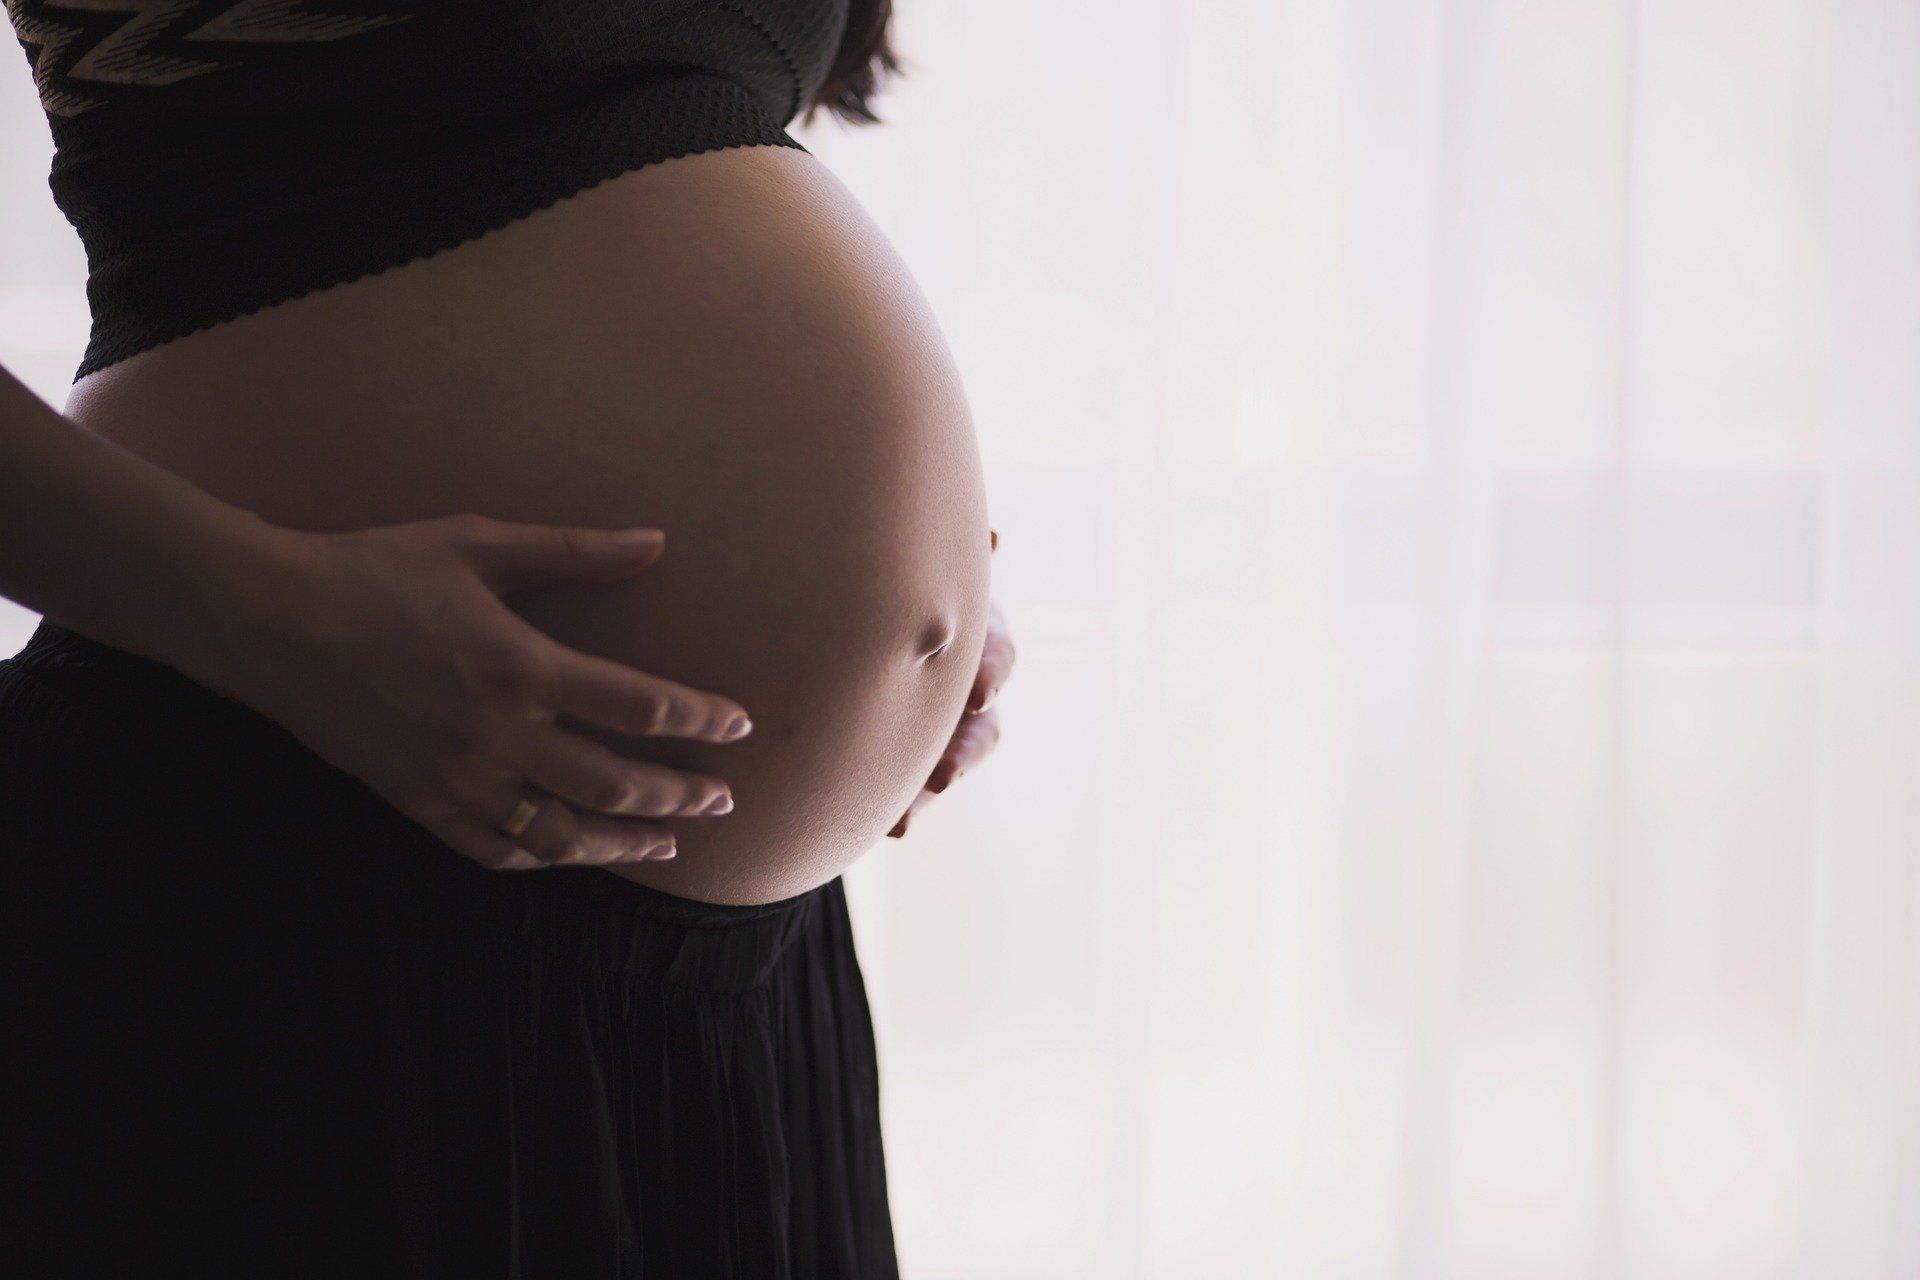 Los problemas de peso infantil pueden originarse durante el embarazo / Foto: Pixabay